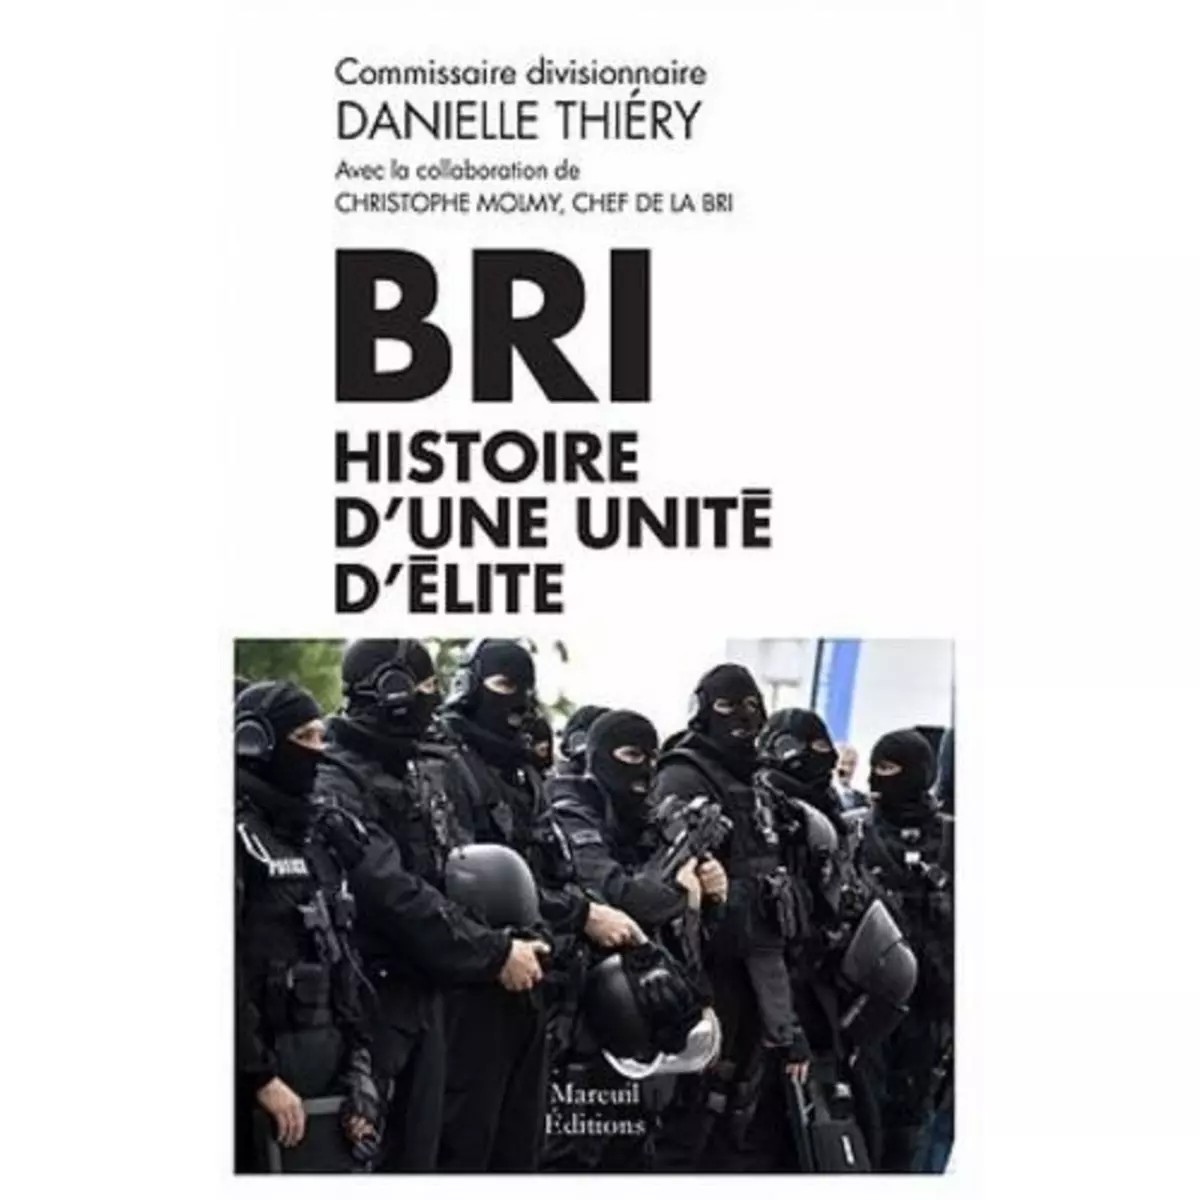  BRI. HISTOIRE D'UNE UNITE D'ELITE, Thiéry Danielle